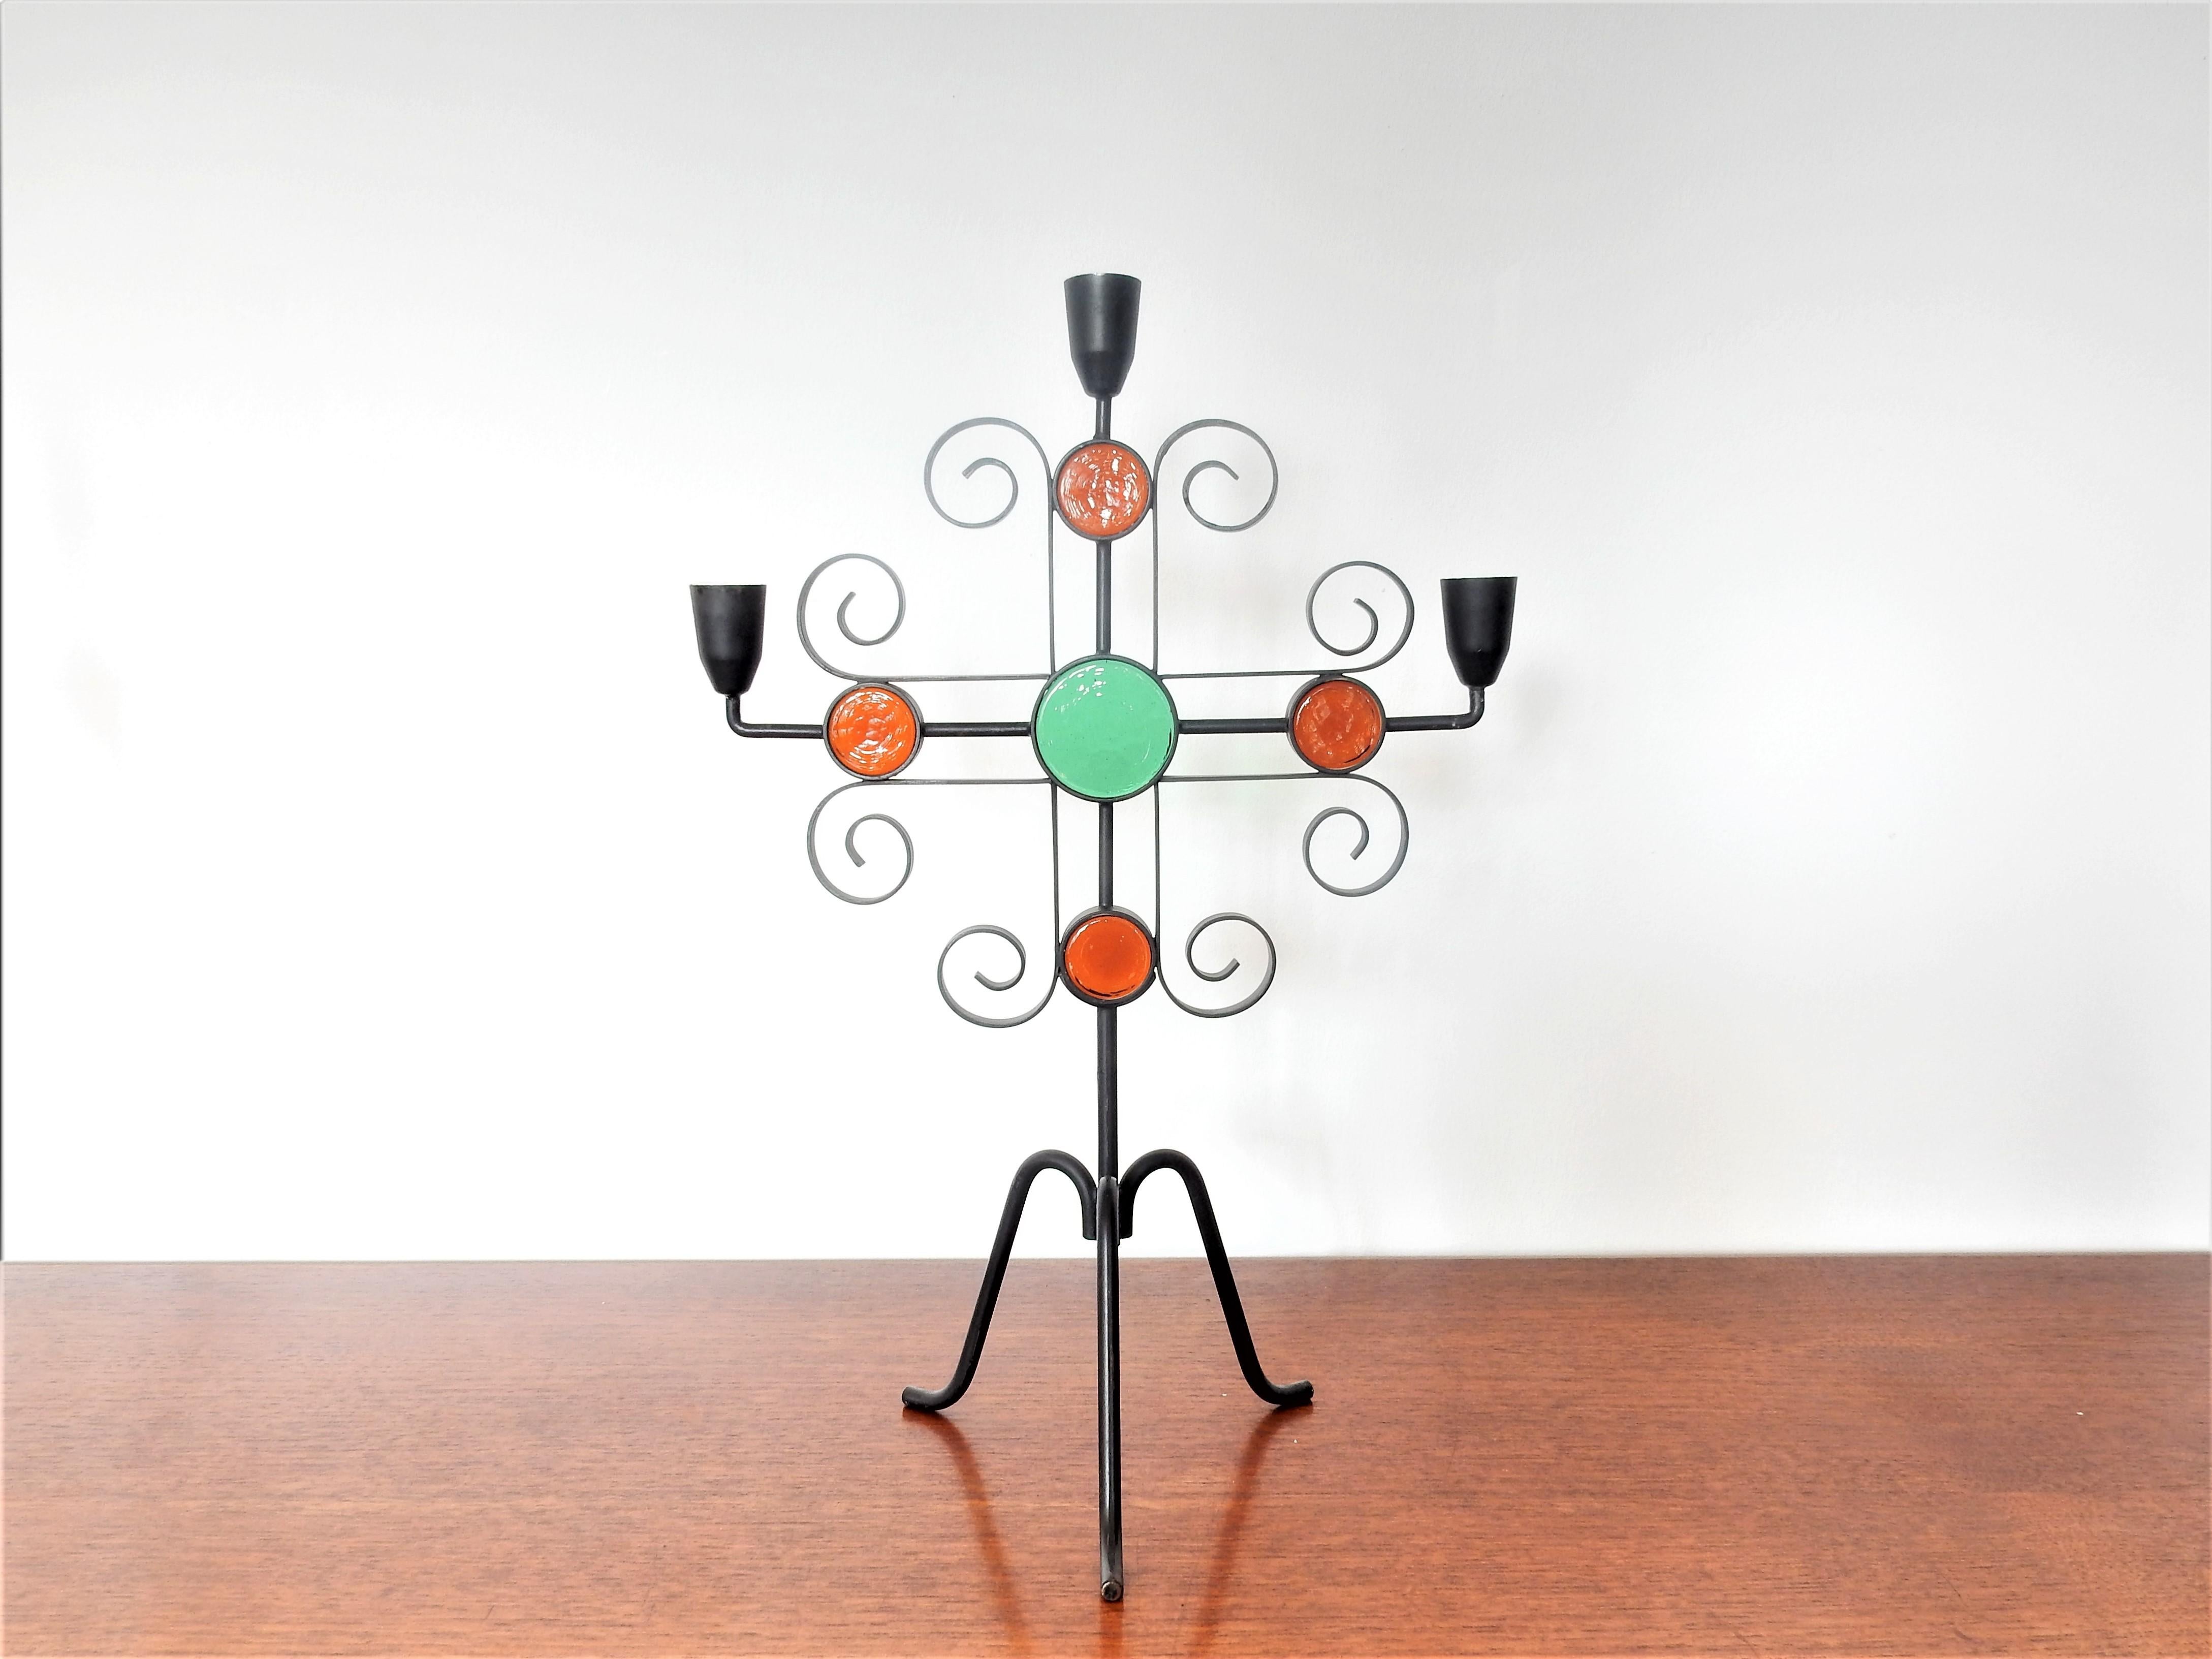 Dieses elegante Set von Kandelabern oder Kerzenhaltern wurde in den 1960er Jahren von Gunnar Ander für Ystad Metall in Schweden entworfen. Der dreibeinige Kandelaber besteht aus einem schwarz lackierten Schmiedeeisenrahmen mit helleren und dunkleren